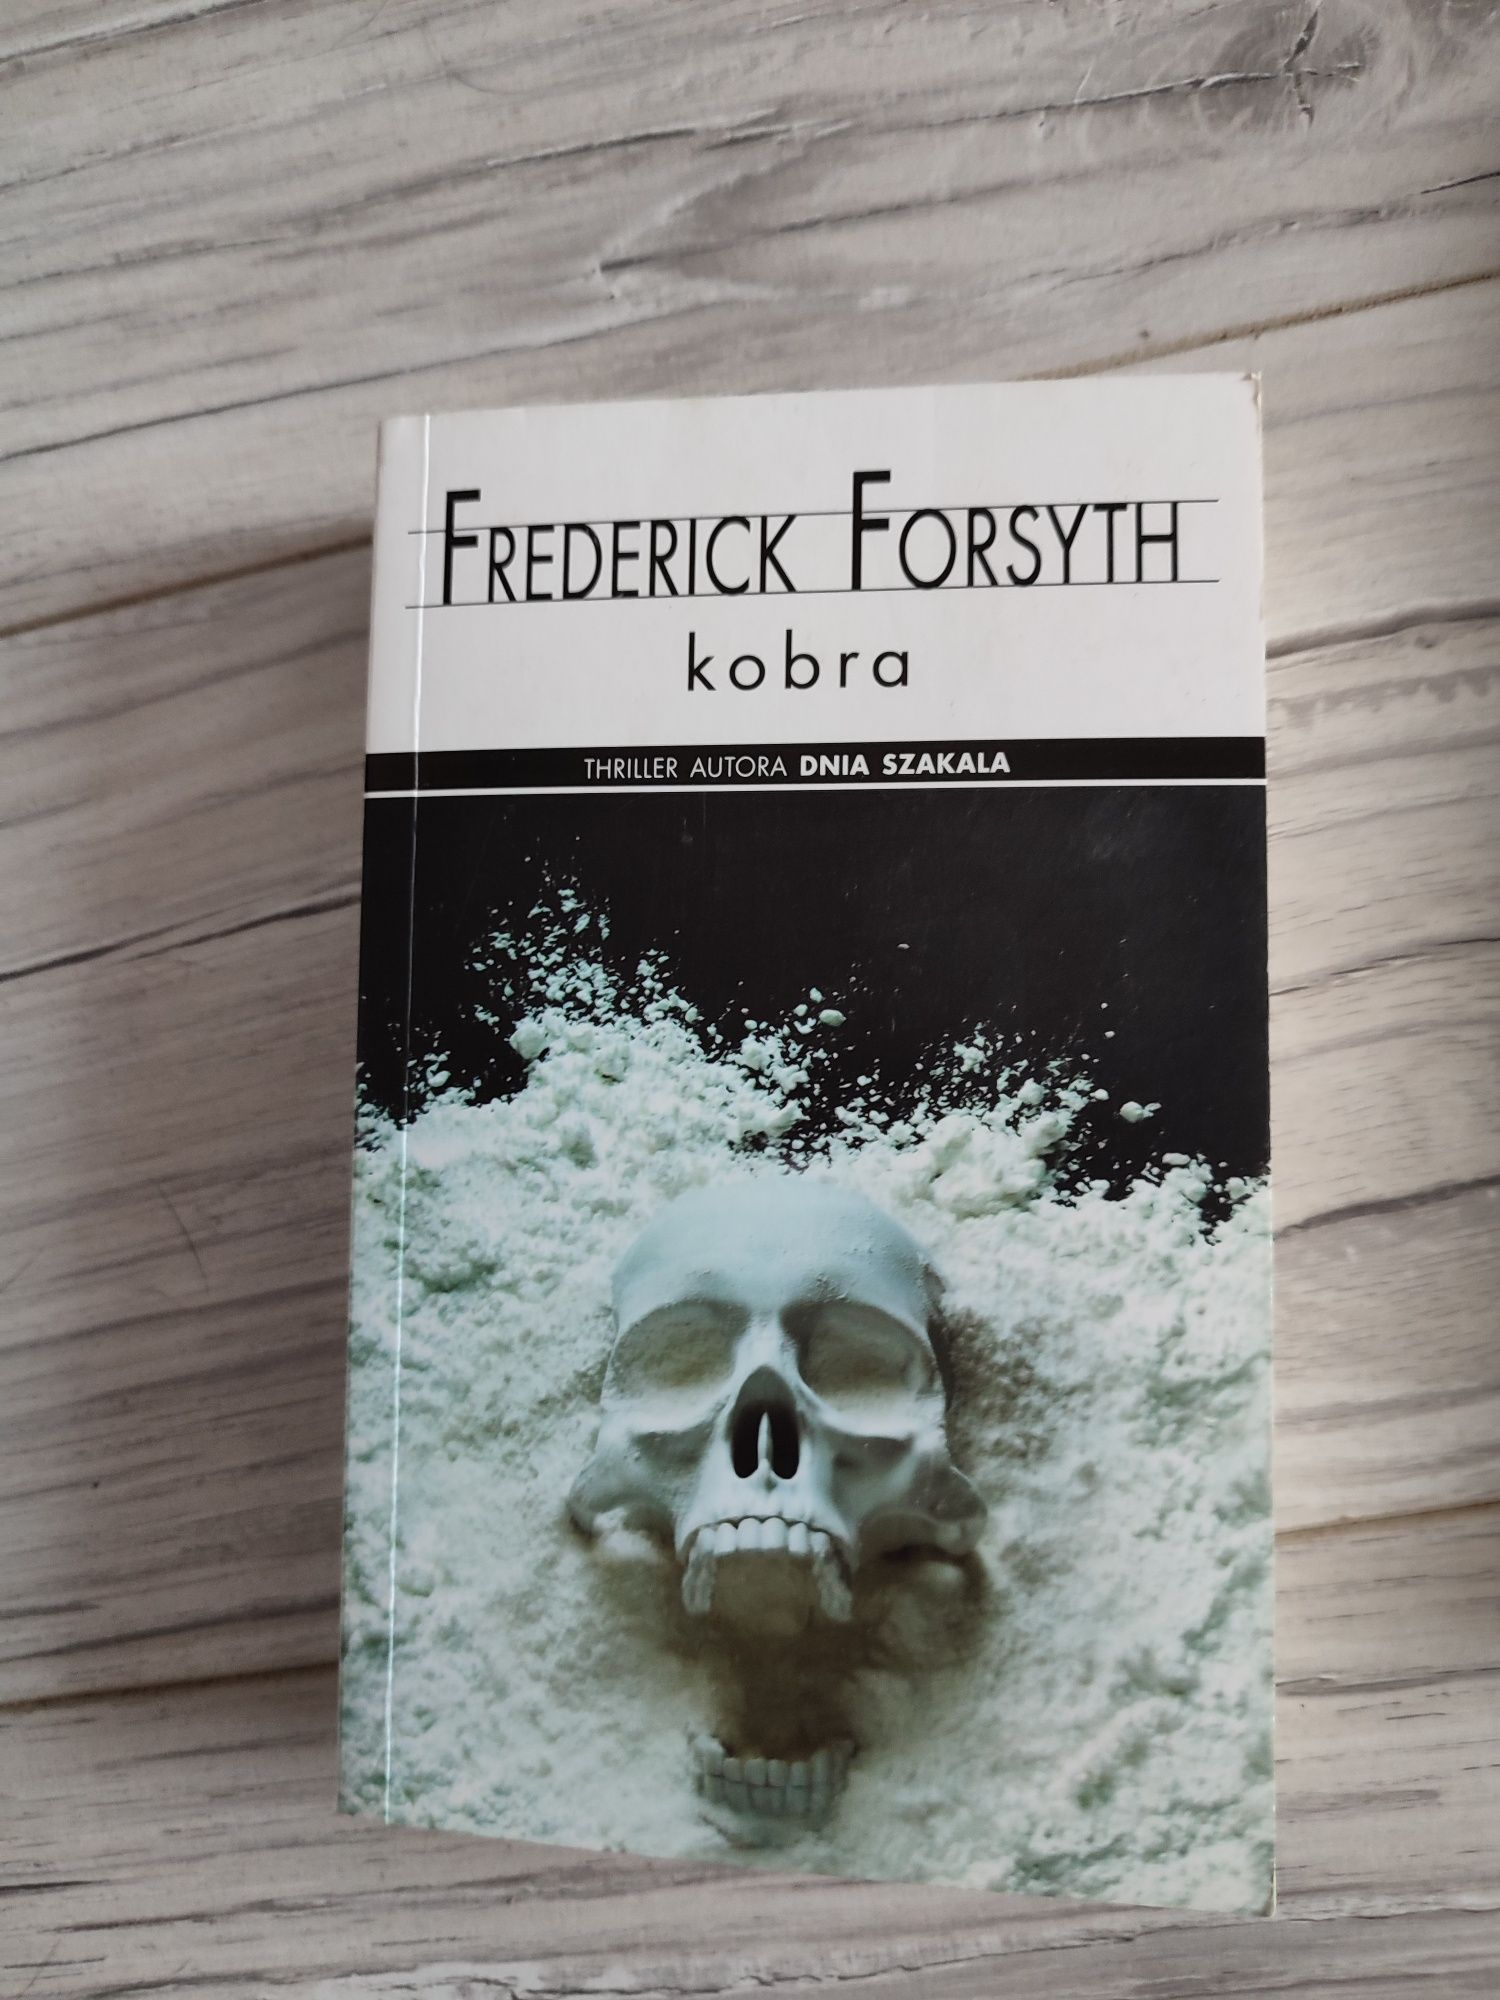 Forsyth Frederick Kobra